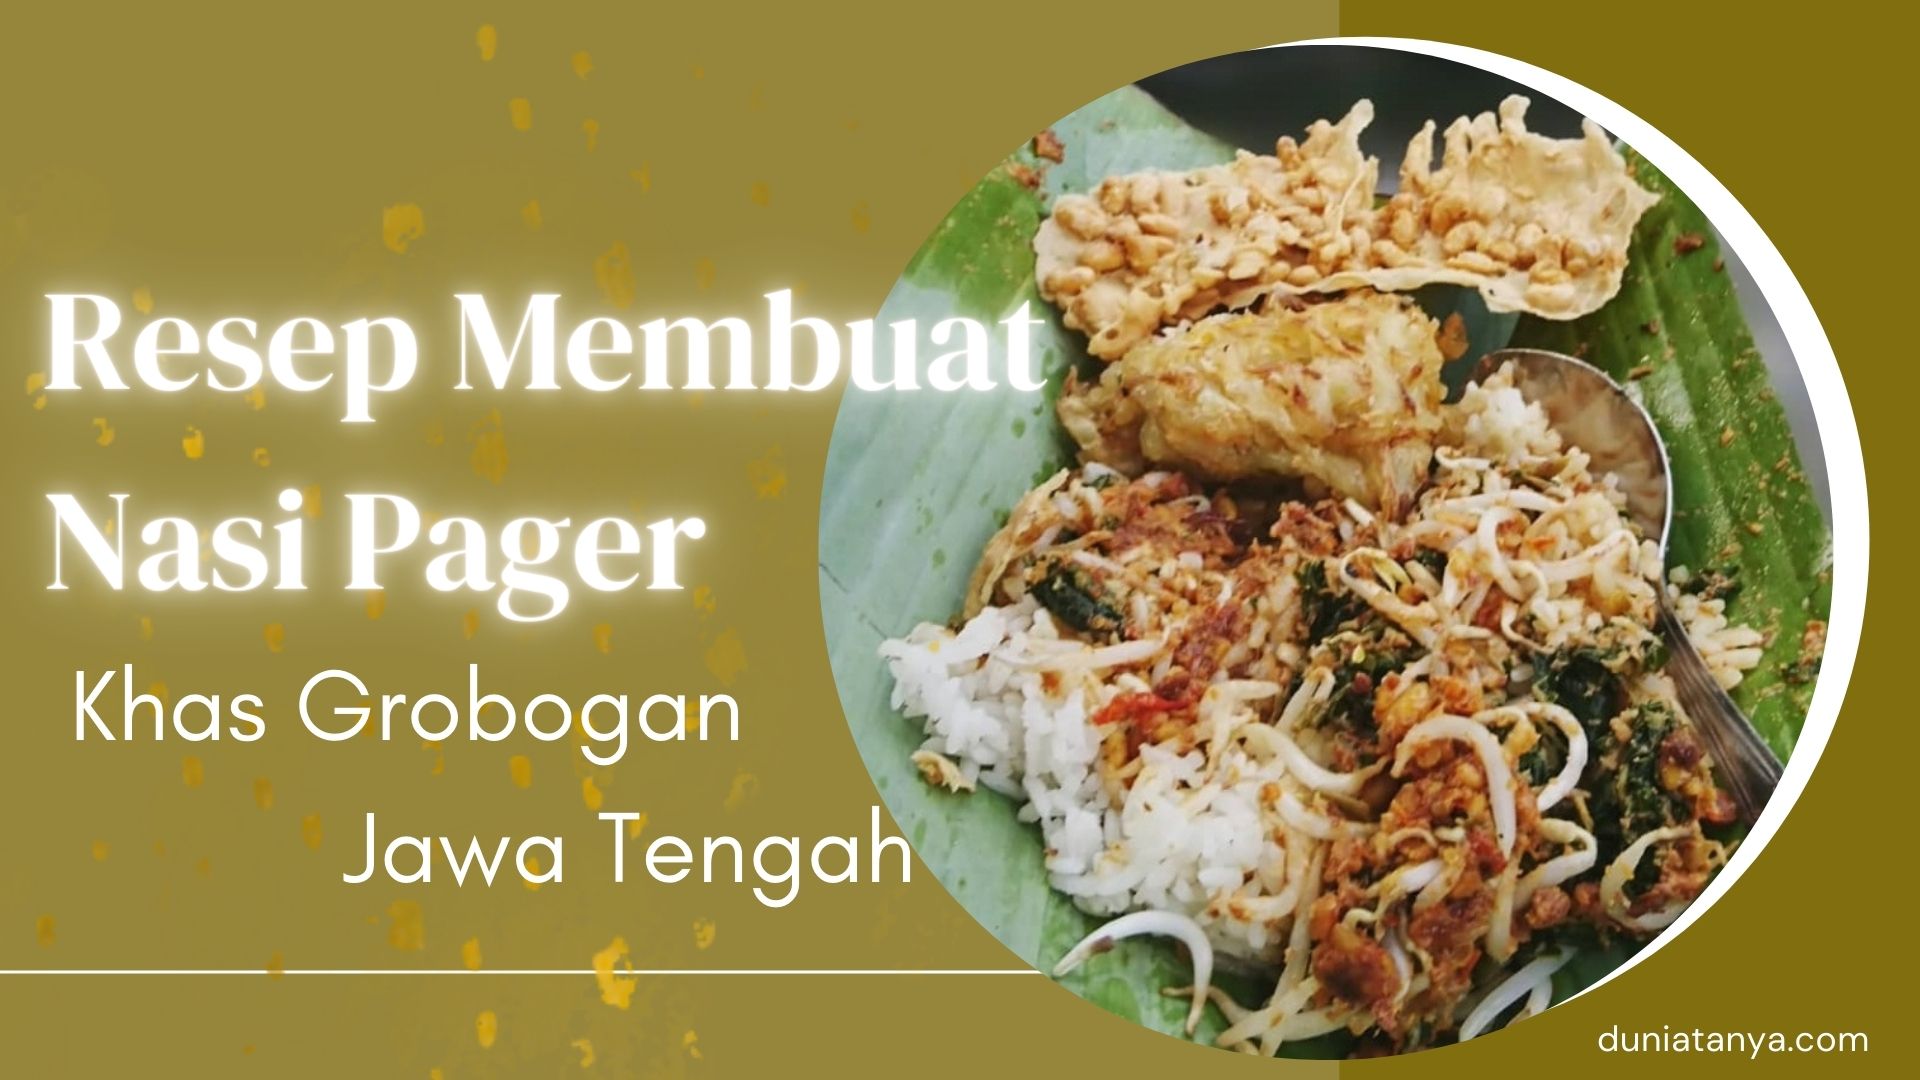 You are currently viewing Resep Membuat Nasi Pager Khas Grobogan Jawa Tengah